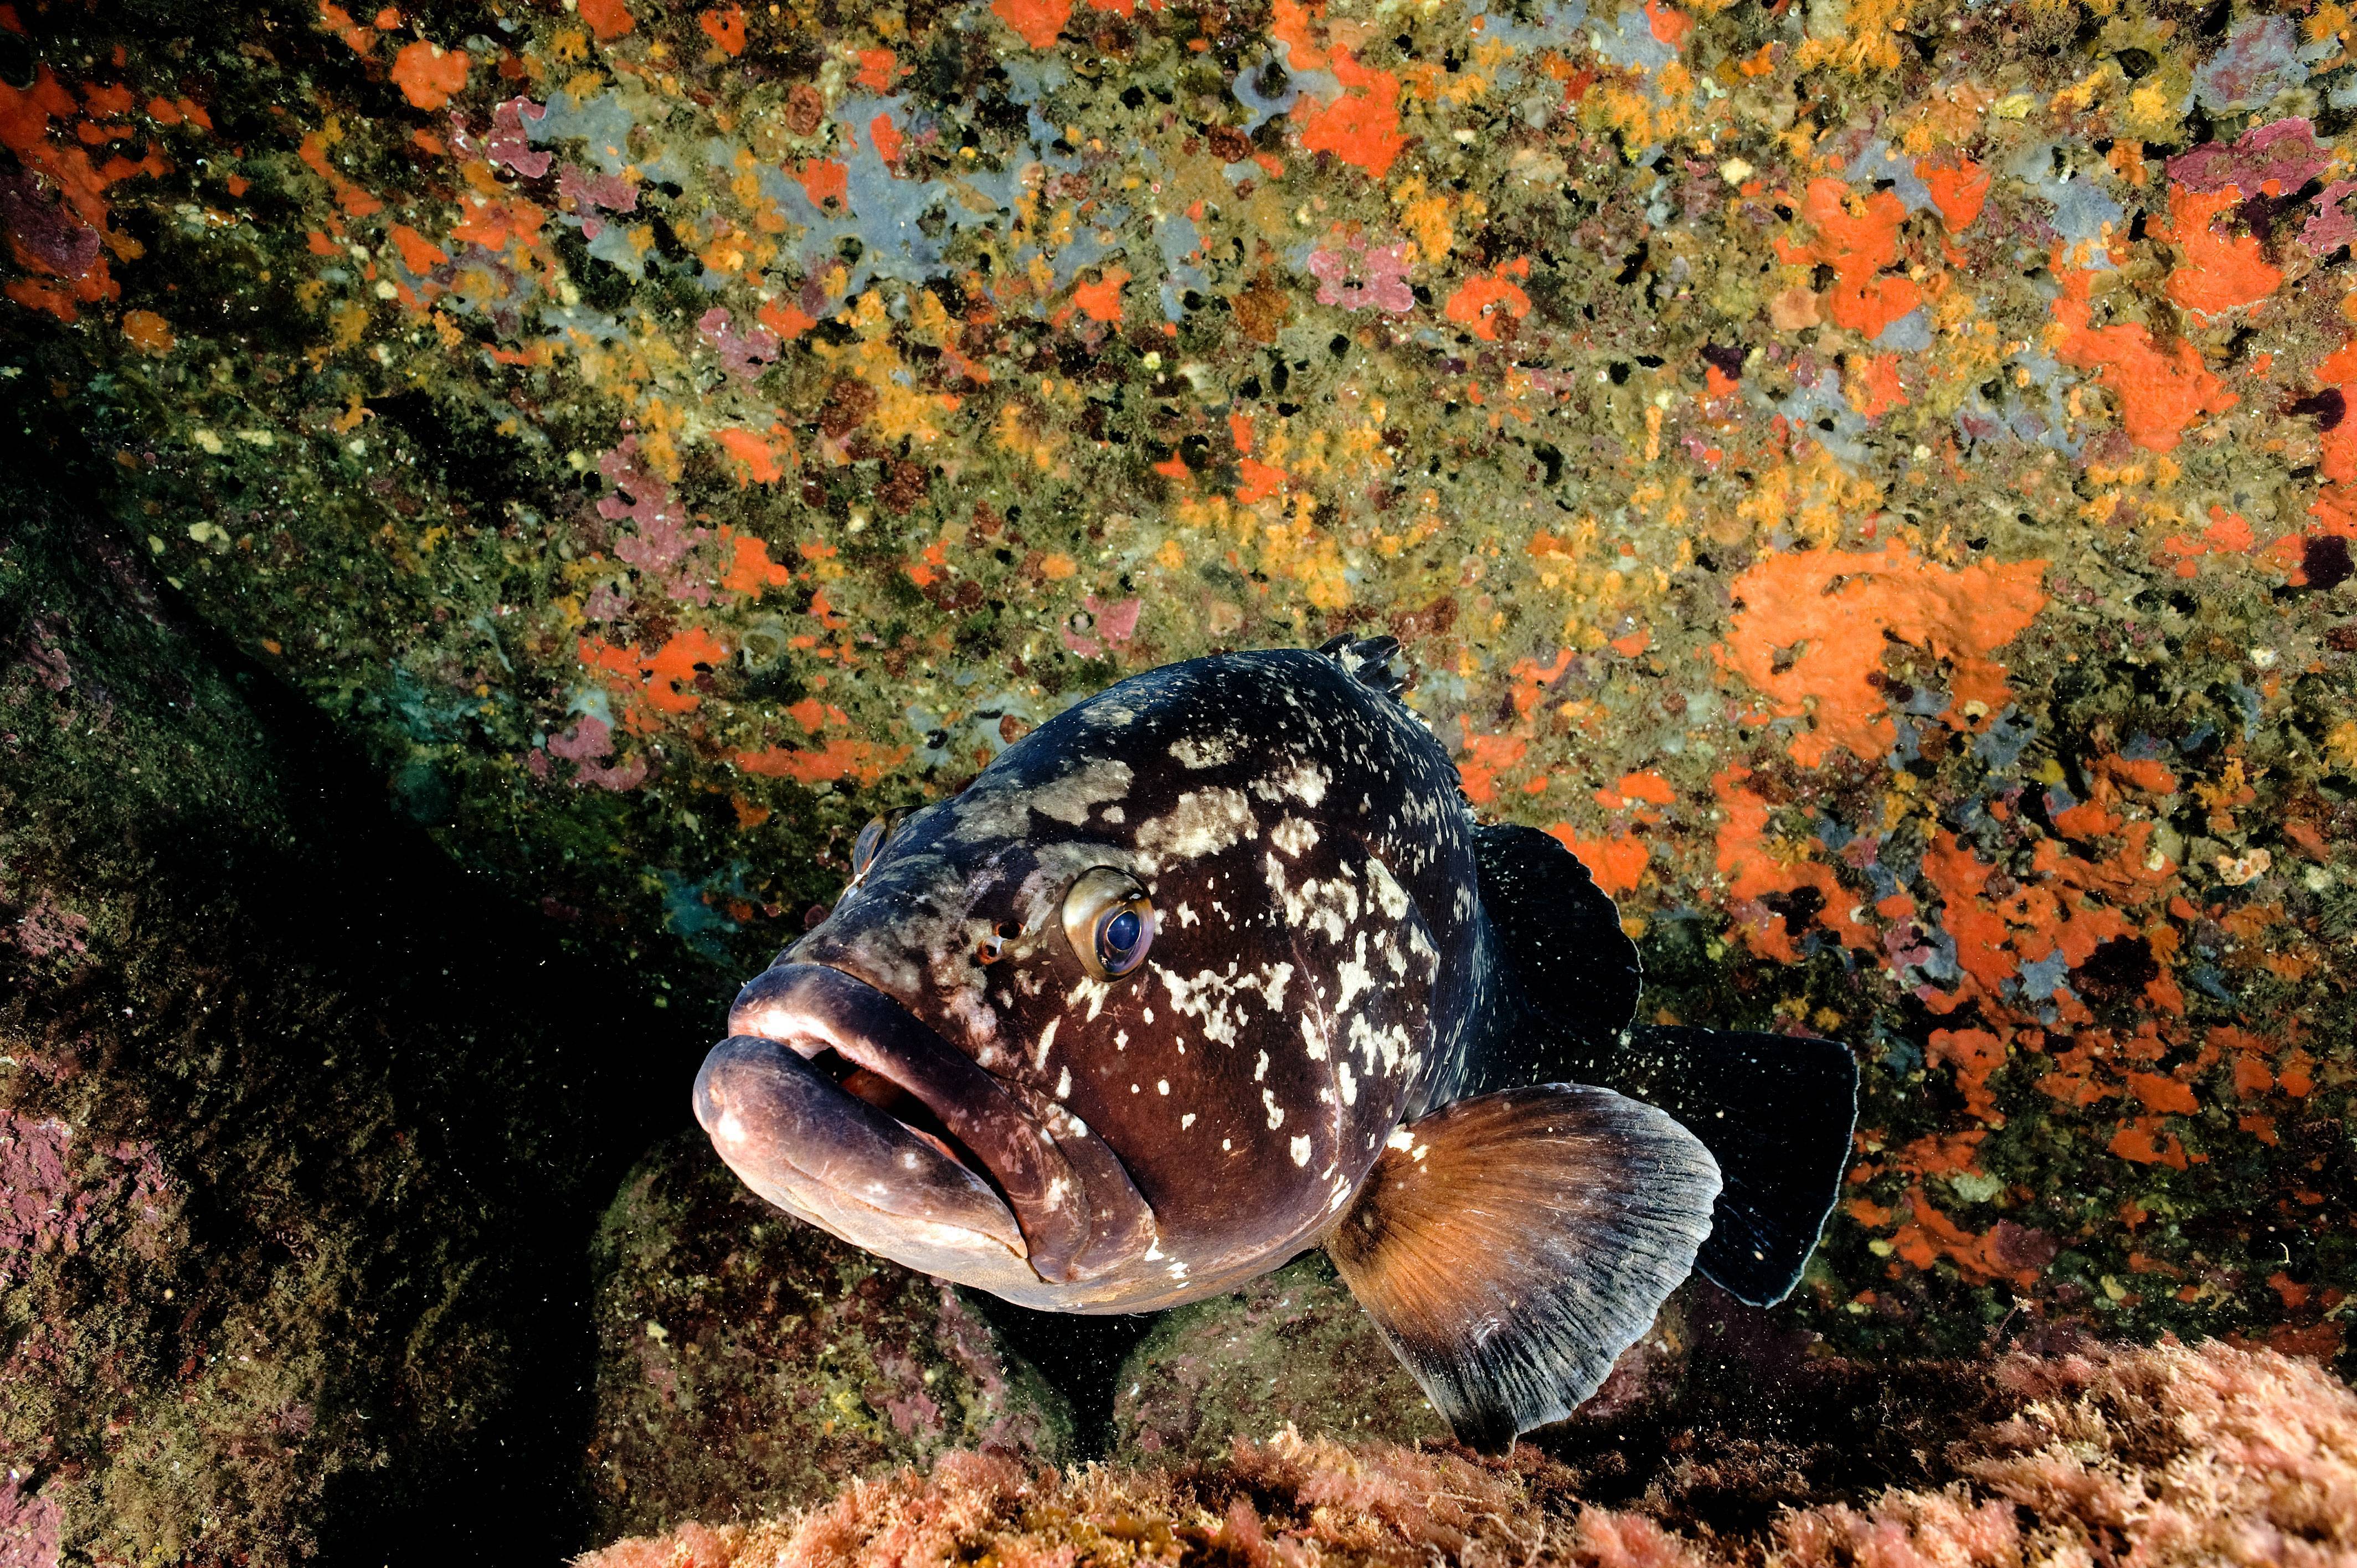 Рыба групера: фото, описание, места обитания, способы лова самого крупного окуня в мире, враги